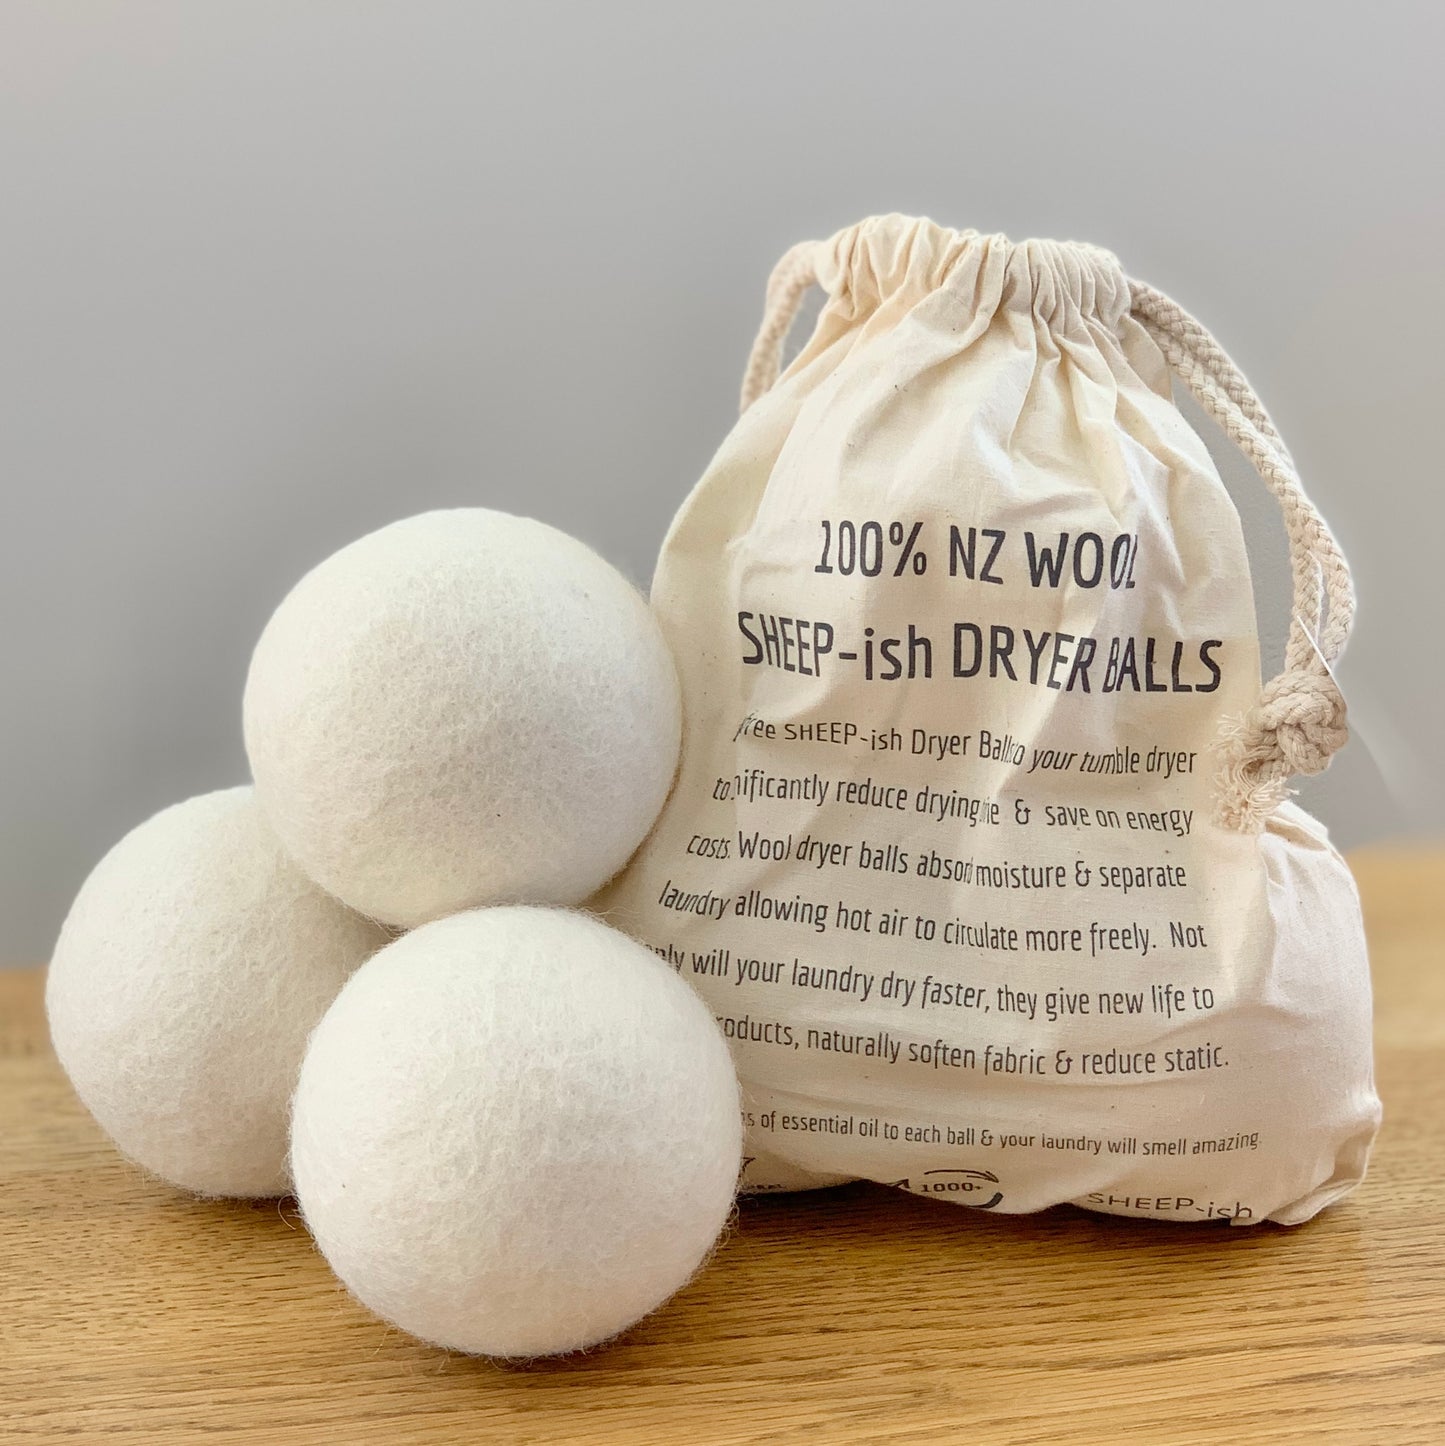 100% NZ Wool Dryer Balls - 3 Pack